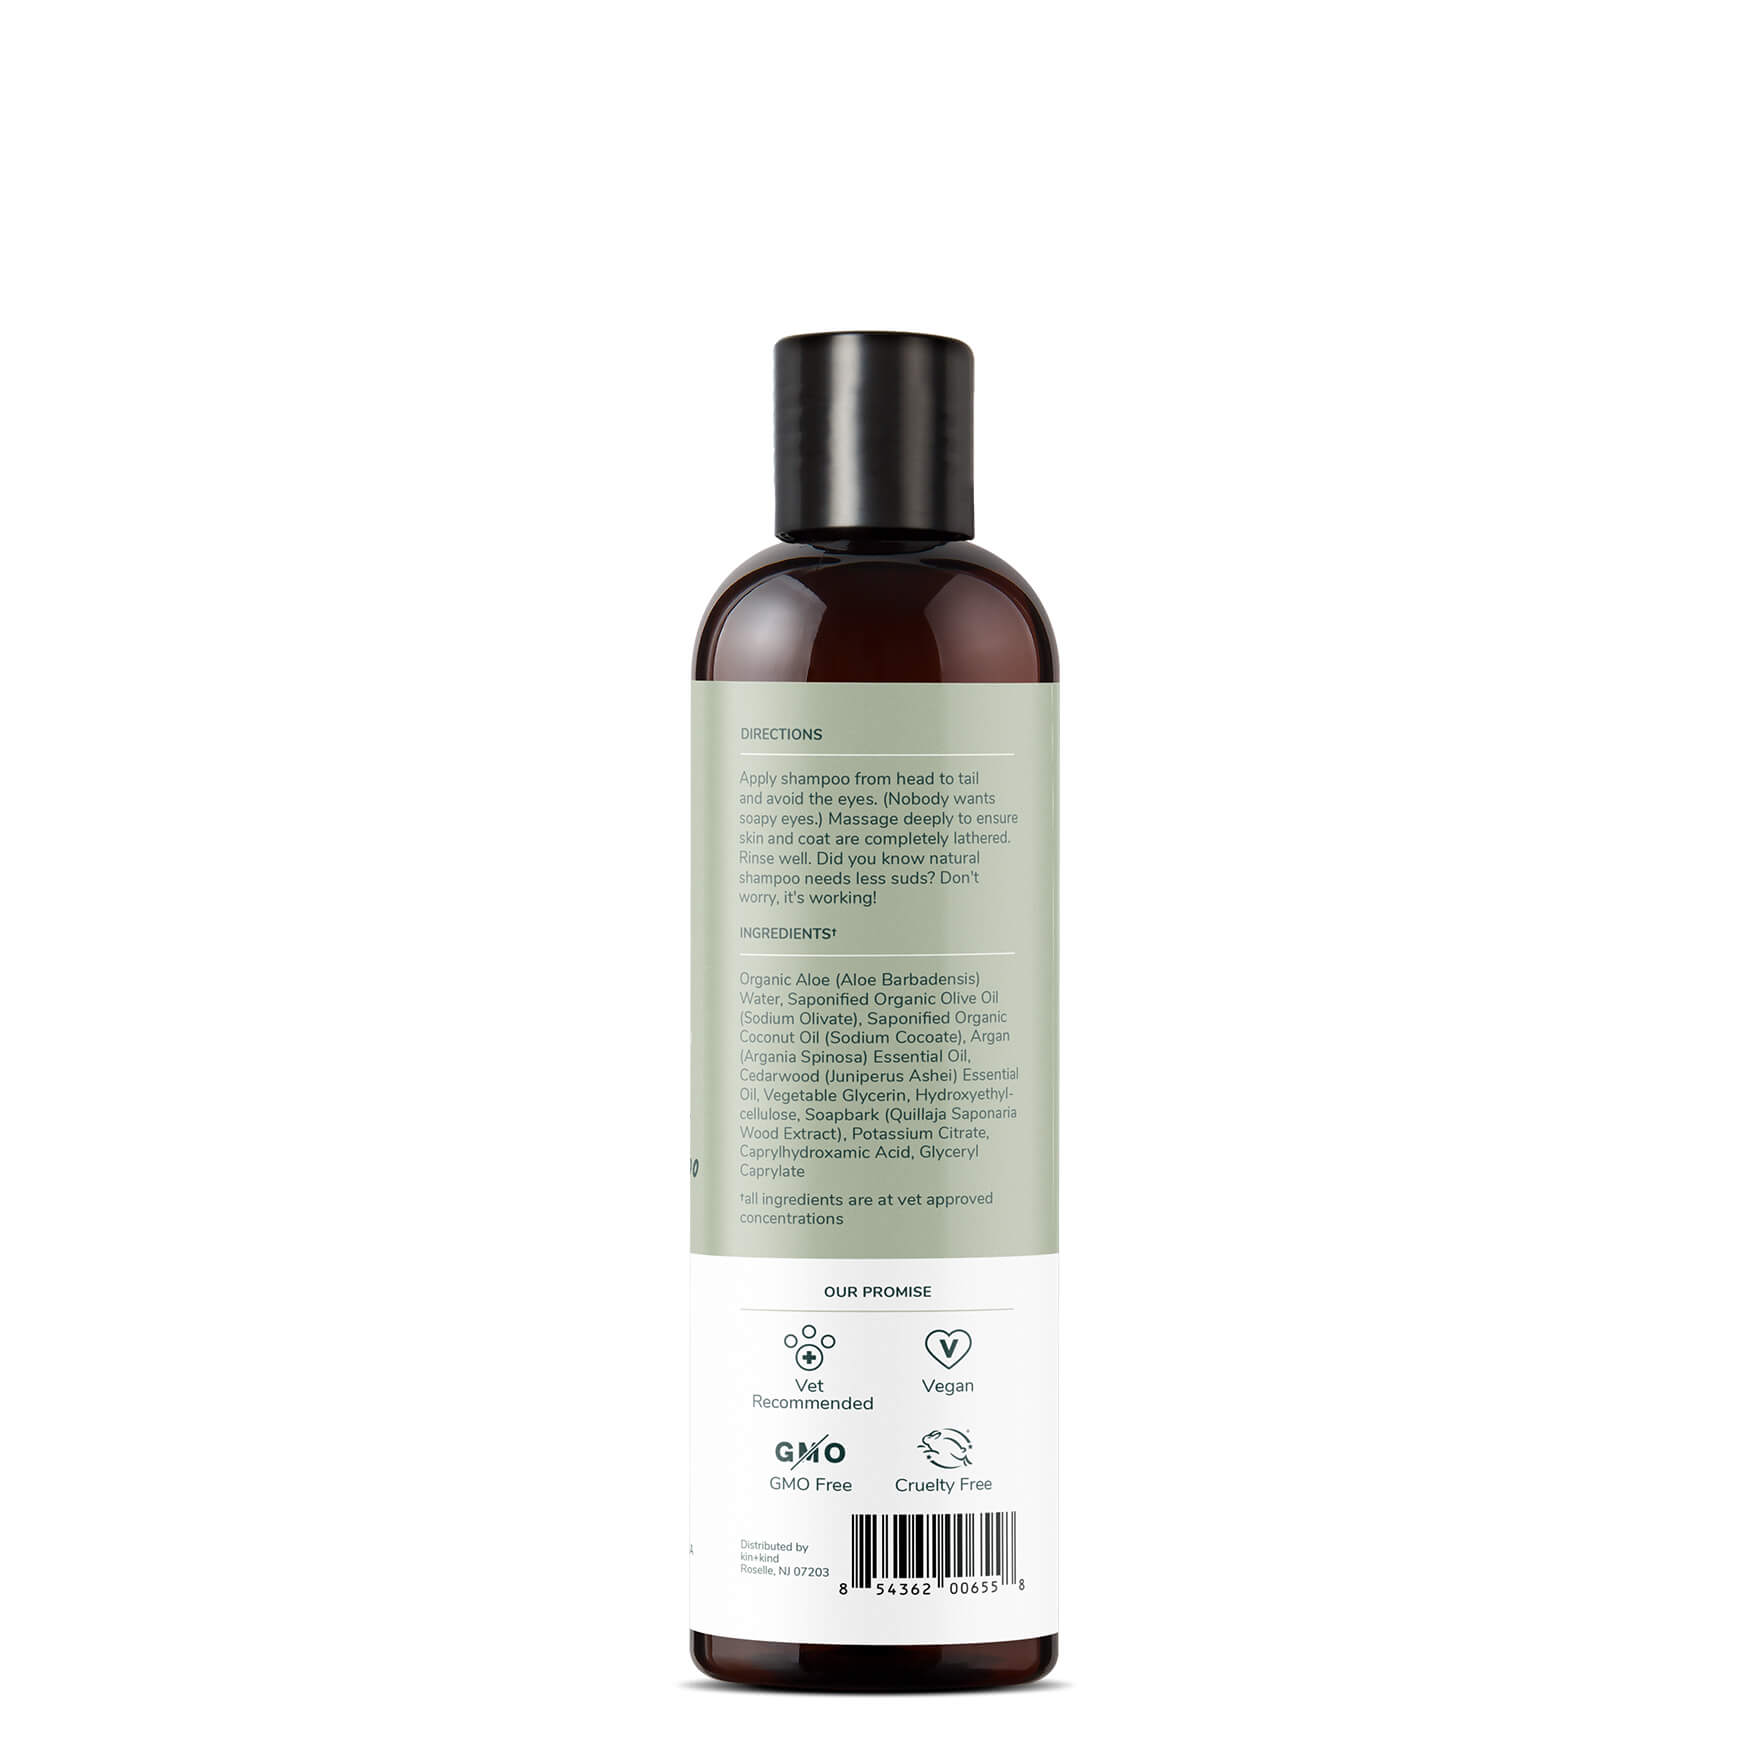 Kin + Kind Skin and Coat Shampoo Bottle information